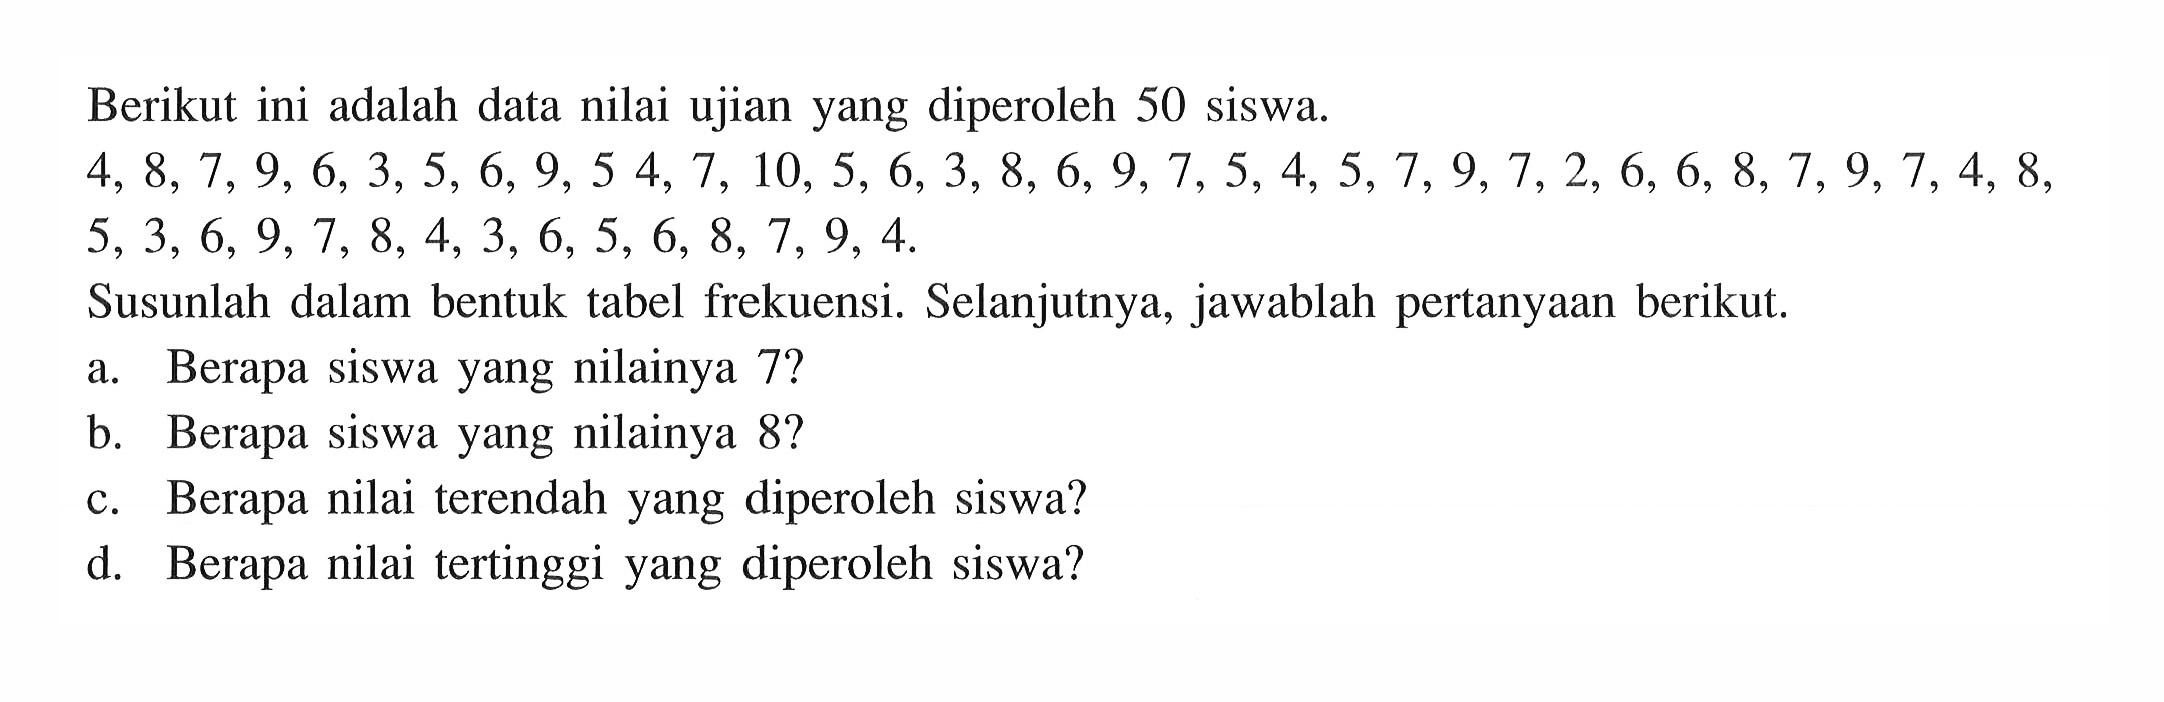 Berikut ini adalah data nilai ujian yang diperoleh 50 siswa. 4,8,7,9,6,3,5,6,9,54,7,10,5,6,3,8,6,9,7,5,4,5,7,9,7,2,6,6,8,7,9,7,4,8,5,3,6,9,7,8,4,3,6,5,6,8,7,9,4. Susunlah dalam bentuk tabel frekuensi. Selanjutnya, jawablah pertanyaan berikut. a. Berapa siswa yang nilainya 7? b. Berapa siswa yang nilainya 8? c. Berapa nilai terendah yang diperoleh siswa? d. Berapa nilai tertinggi yang diperoleh siswa?